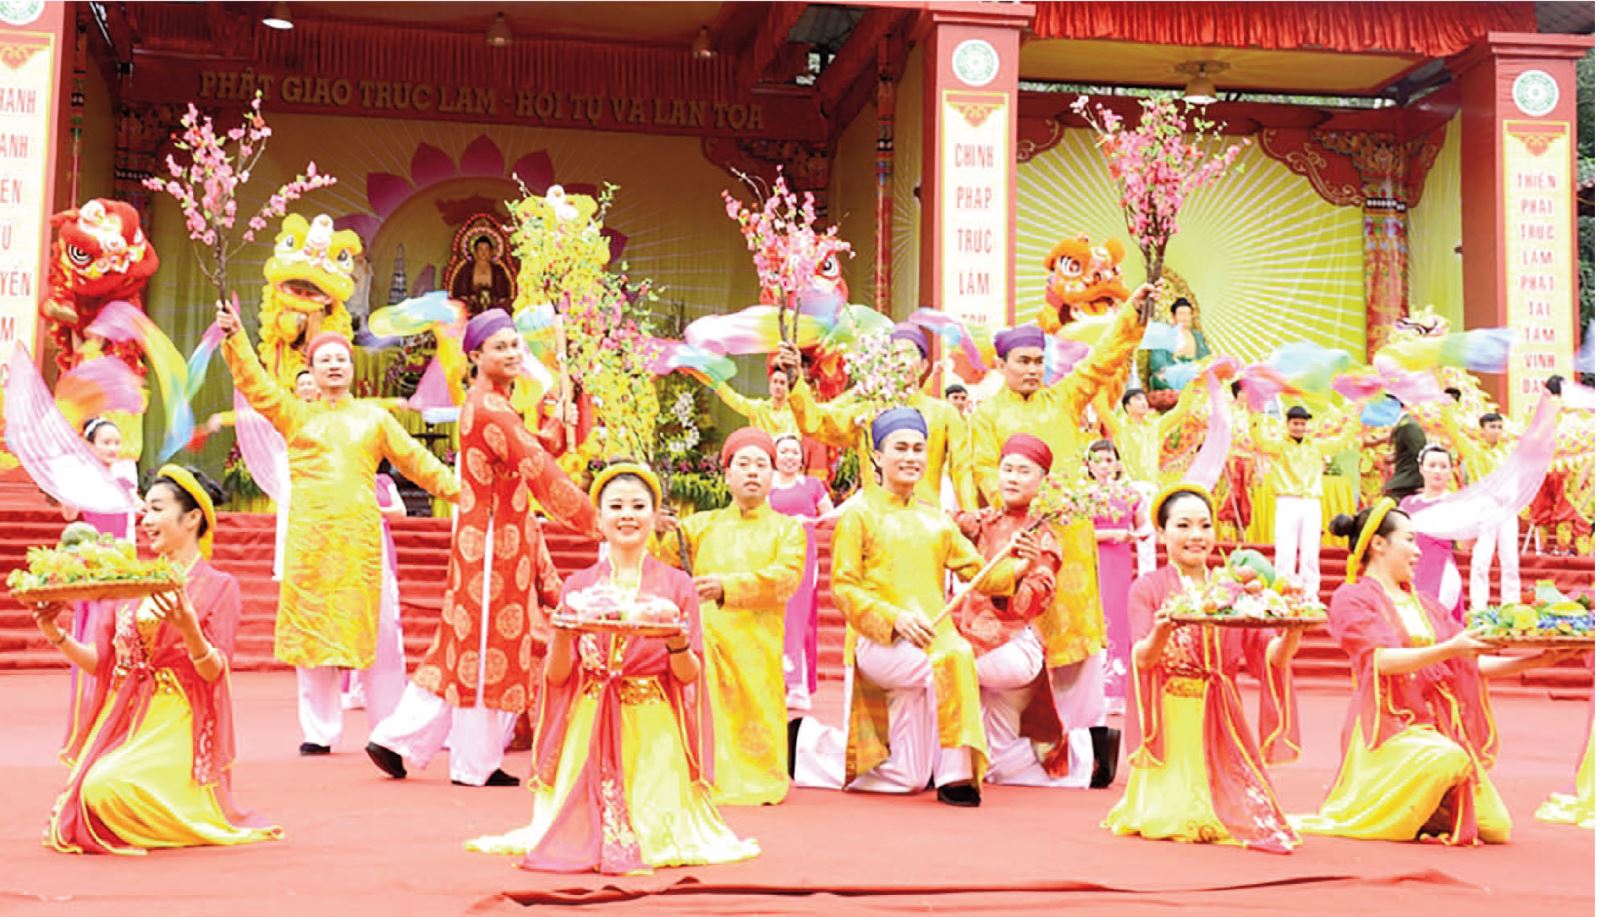 Đẩy mạnh công tác số hóa lễ hội, xây dựng môi trường văn hóa trong lễ hội truyền thống